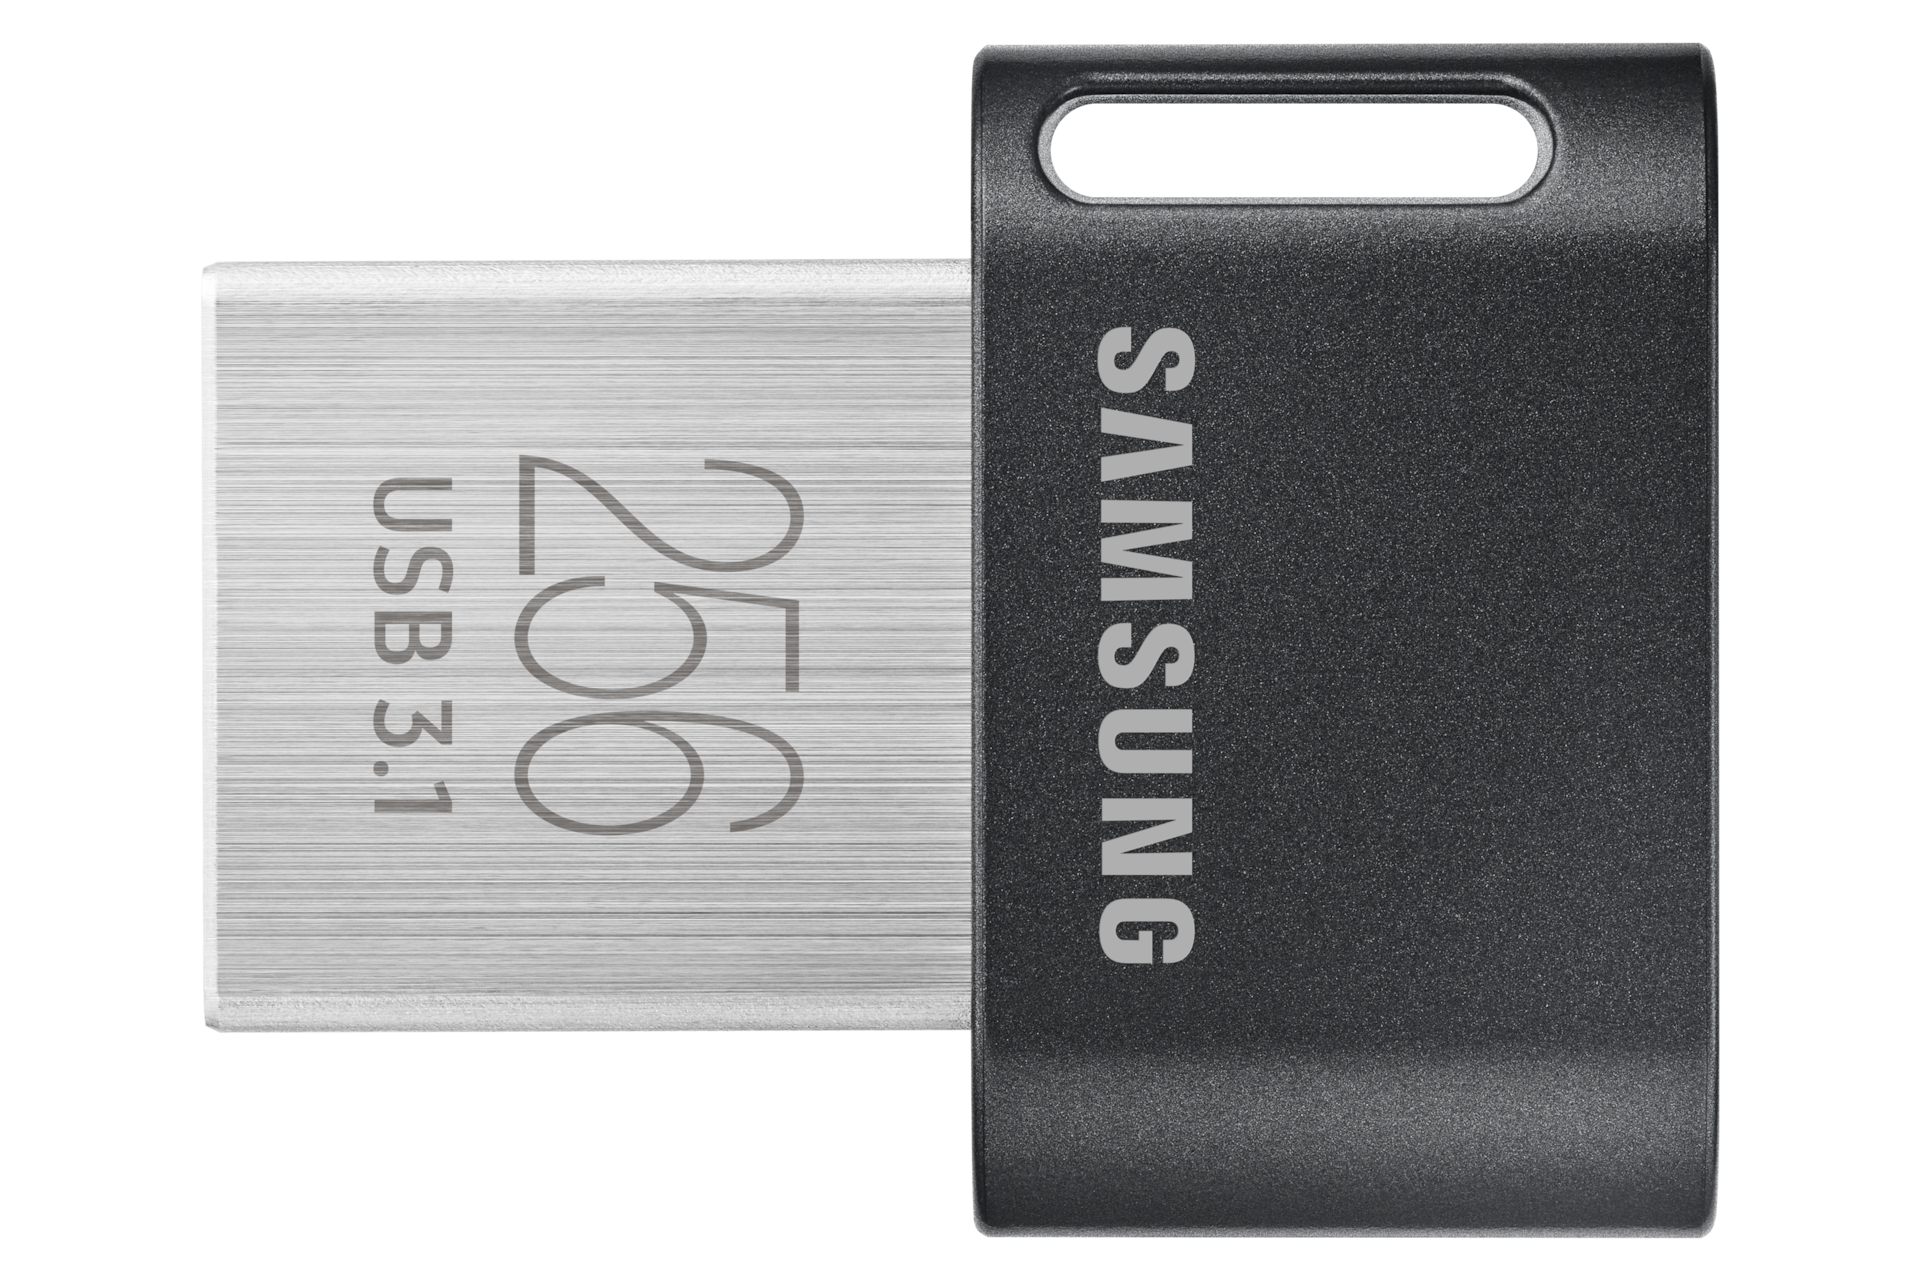 Toshiba dévoile une clé USB 3.0 de 256 Go très rapide à base de NAND Flash  3D (maj avec les prix)